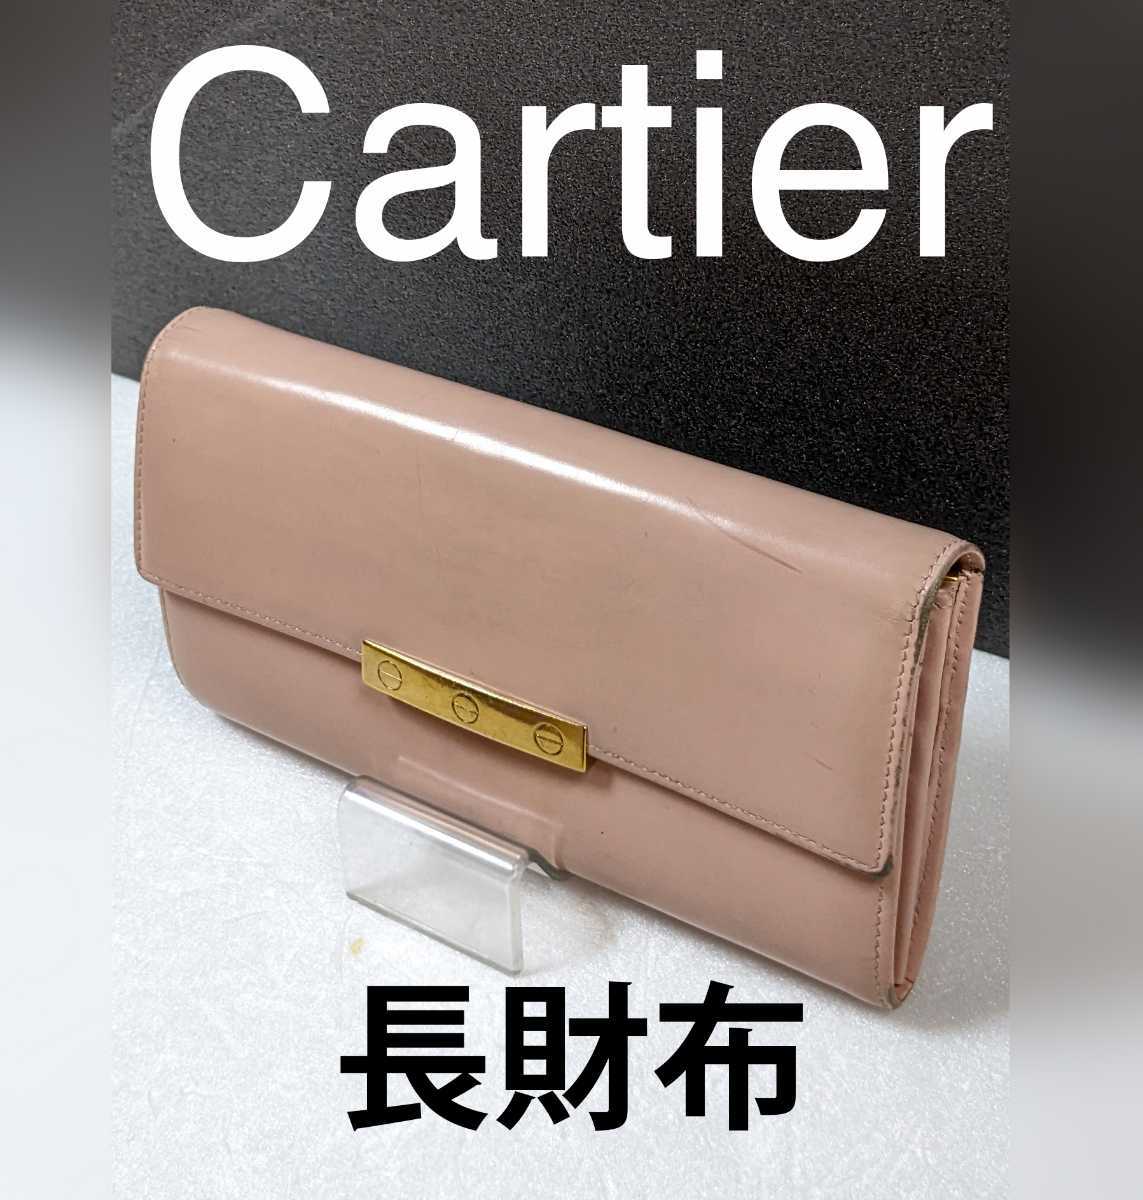 ★【Cartier】カルティエ 長財布 ラブライン 3連ビス ピンク エナメル_画像1